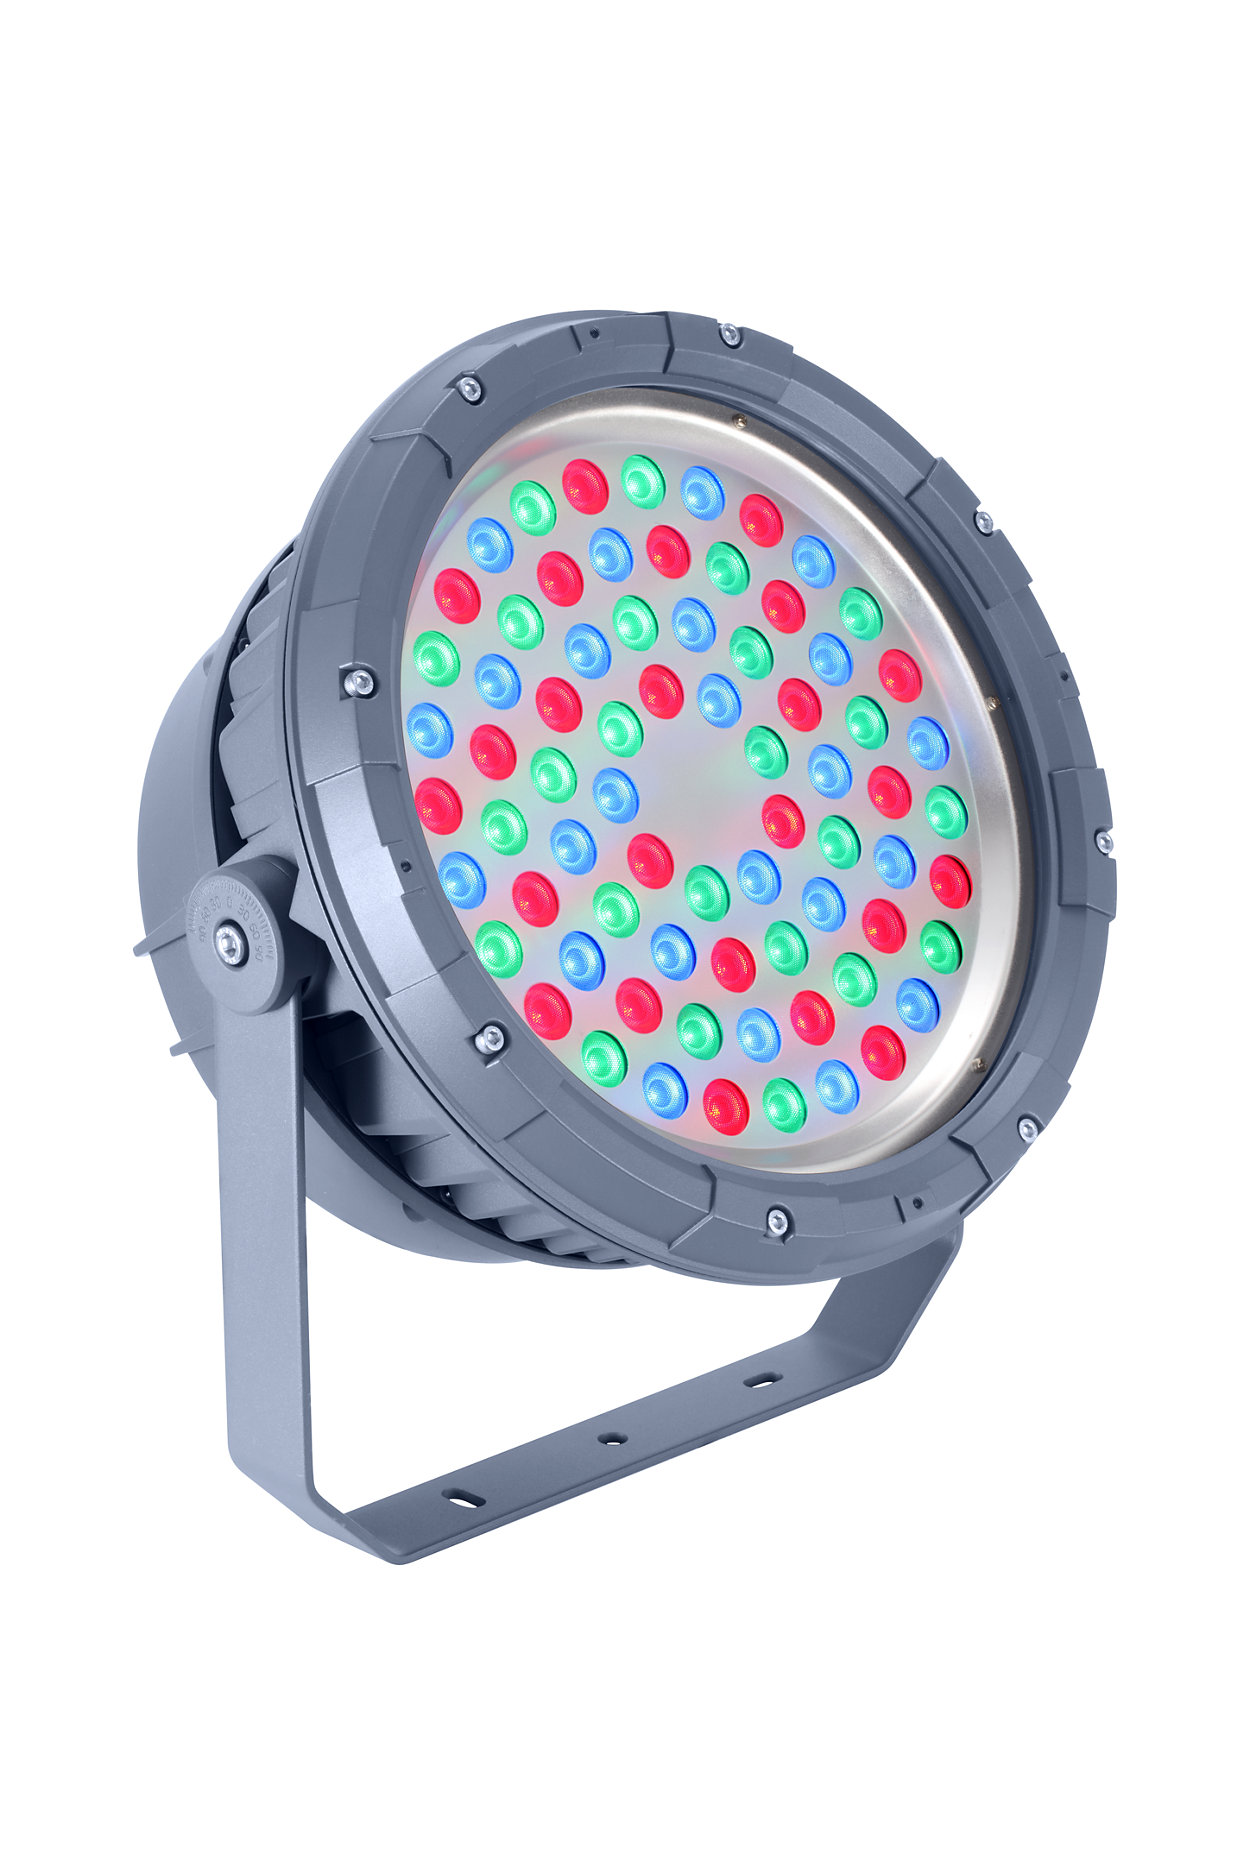 UniFlood C — это светодиодный прожектор для архитектурного статичного или динамичного освещения.